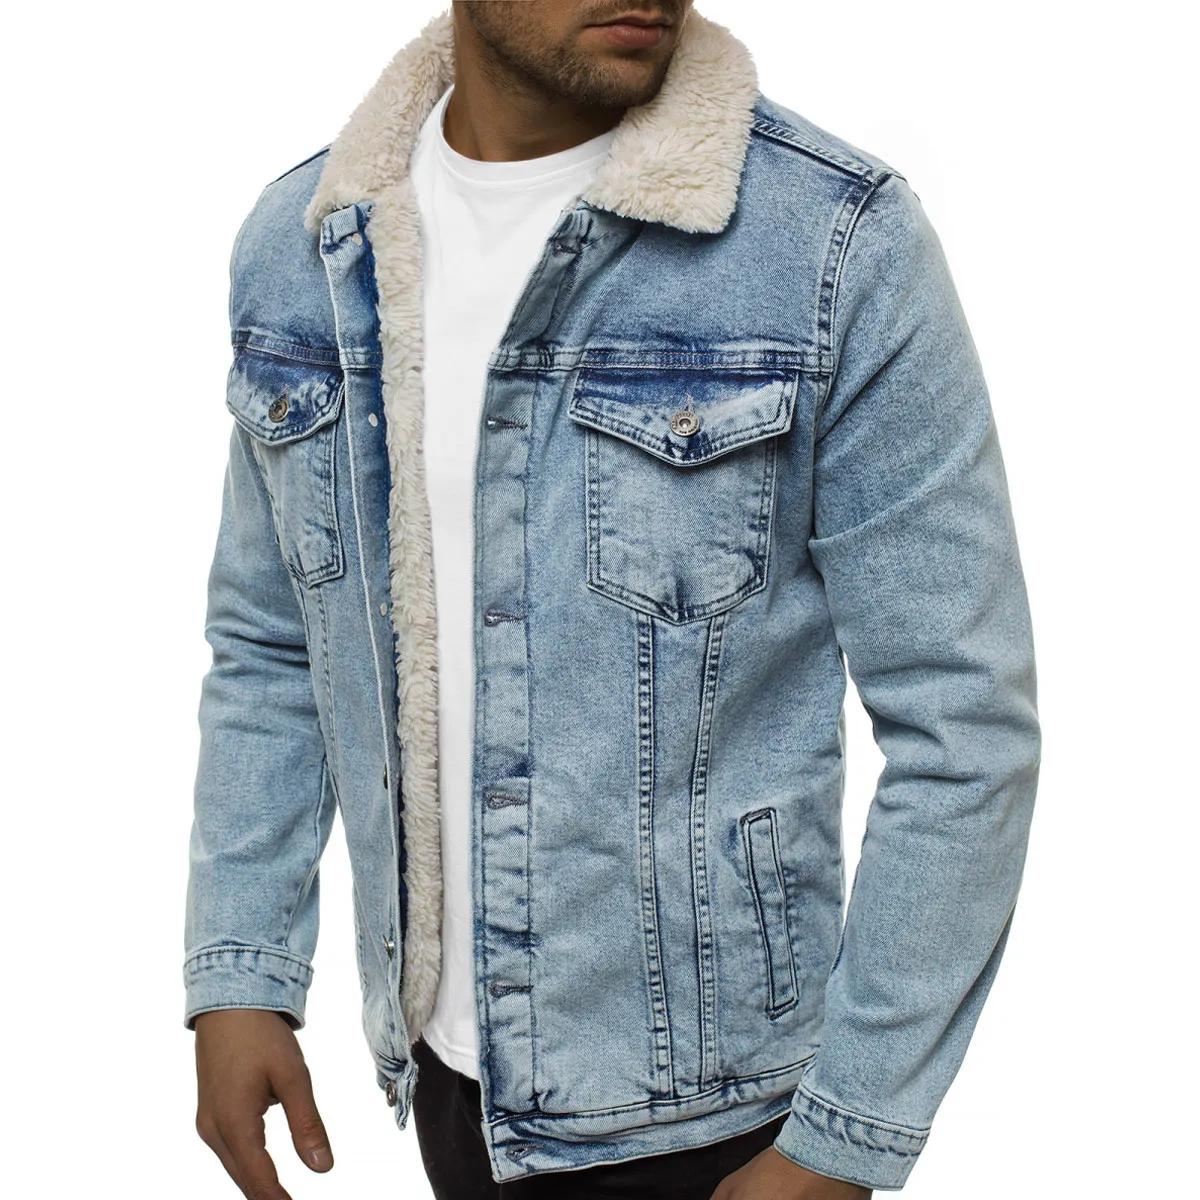 Venda quente jaquetas jeans masculinas disponíveis a preço barato de fábrica jaquetas jeans masculinas de secagem rápida e respirável cores personalizadas